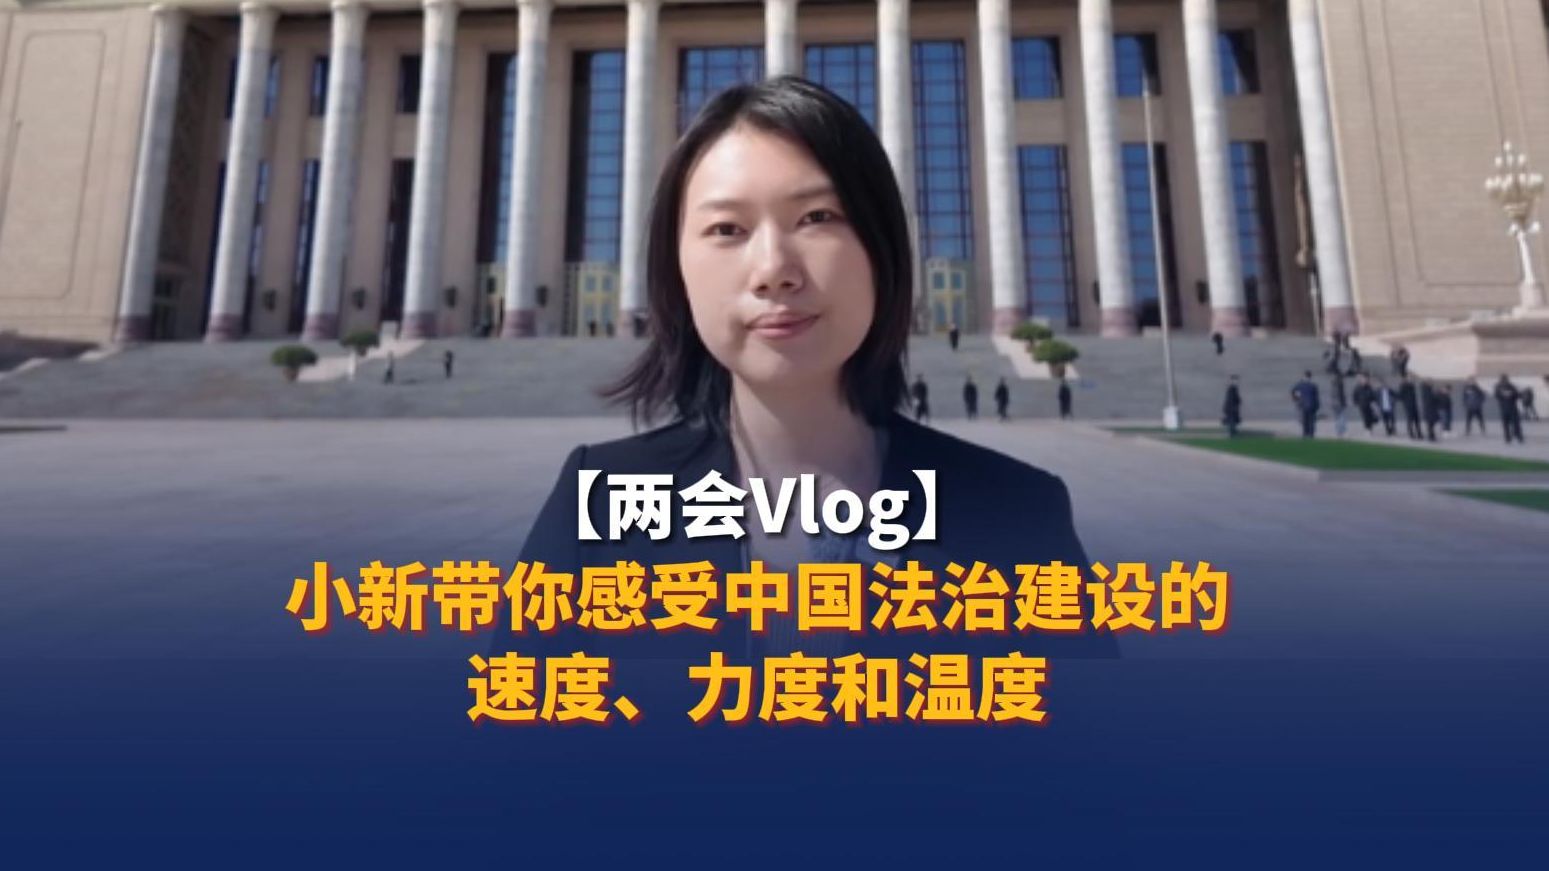 【两会Vlog】小新带你感受中国法治建设的速度、力度和温度